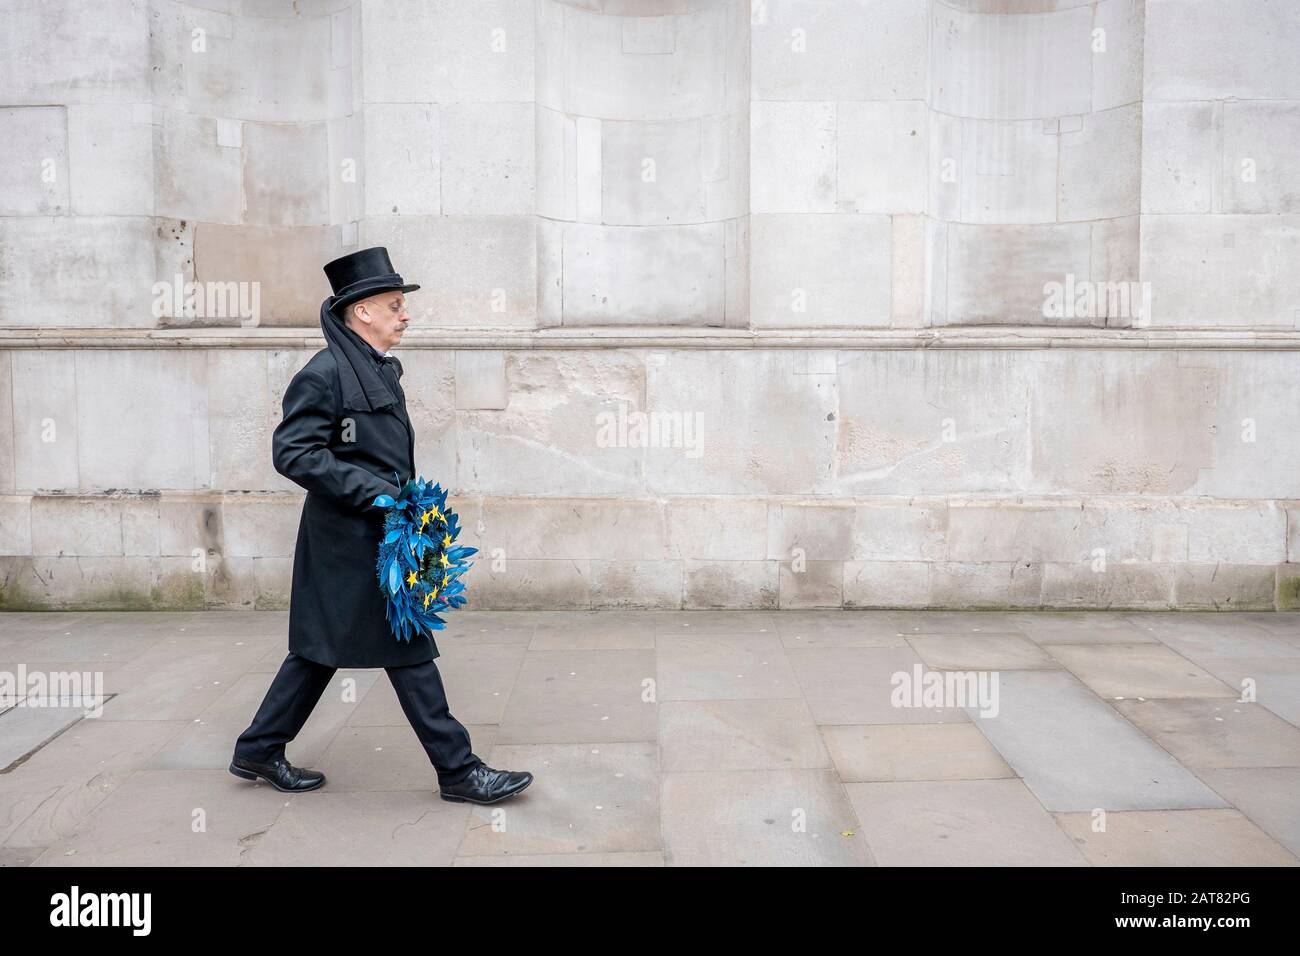 Londra, Regno Unito. 31 Gennaio 2020. Un uomo vestito come un'impresa cammina lentamente lungo Whitehall tenendo una barriera funebre dell'Unione europea con 11 stelle gialle. Foto Stock